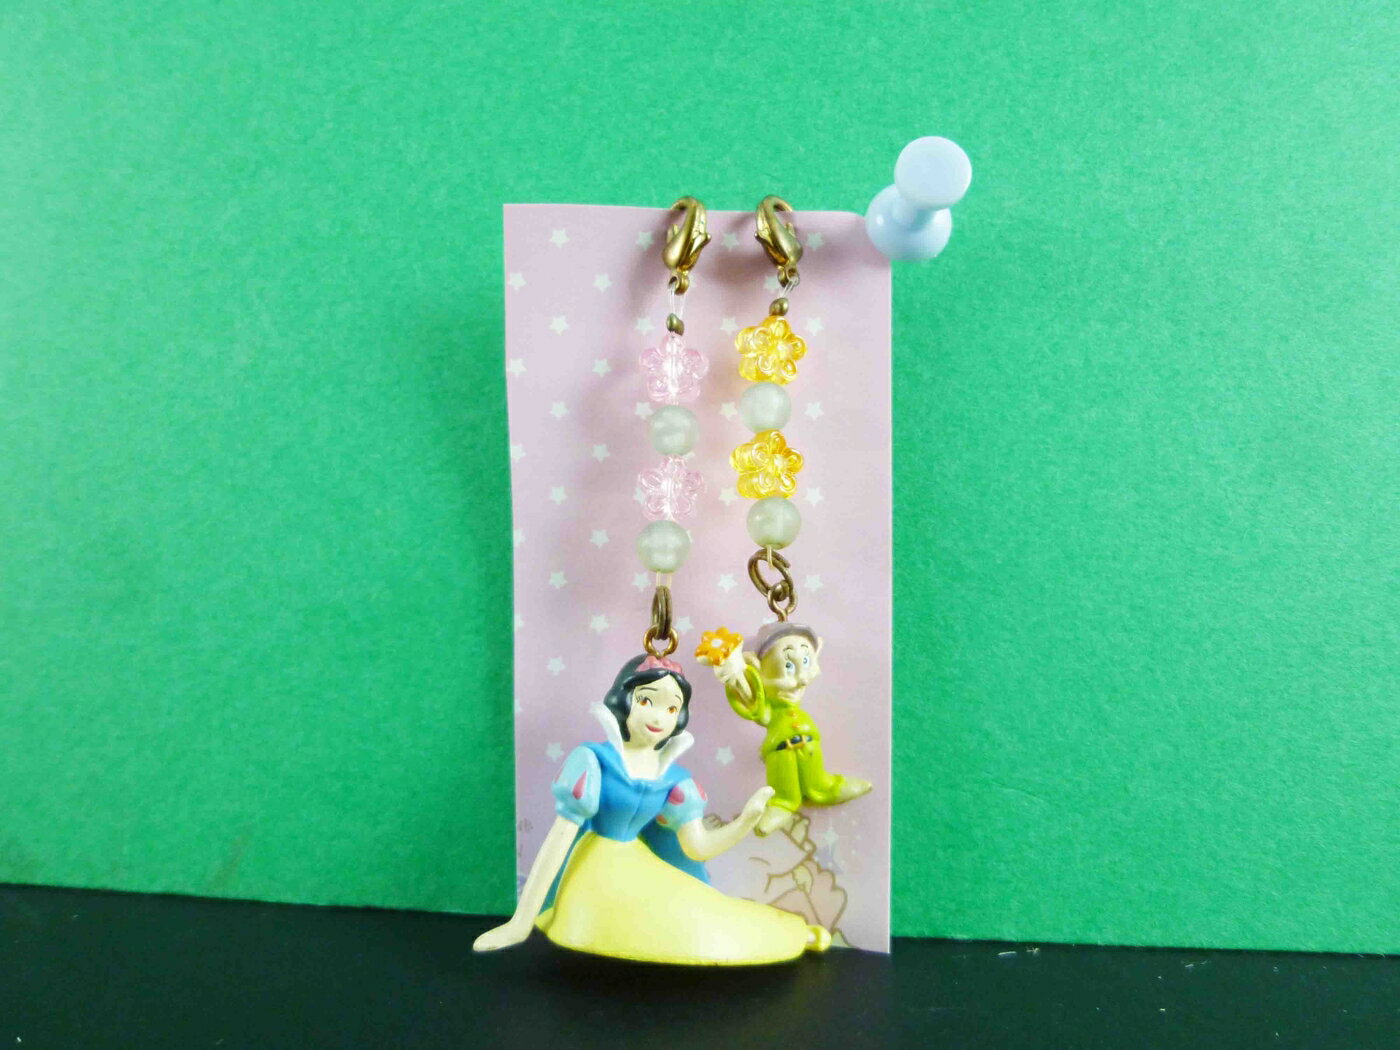 【震撼精品百貨】公主 系列Princess 拉鍊扣-白雪公主+小矮人造型 震撼日式精品百貨